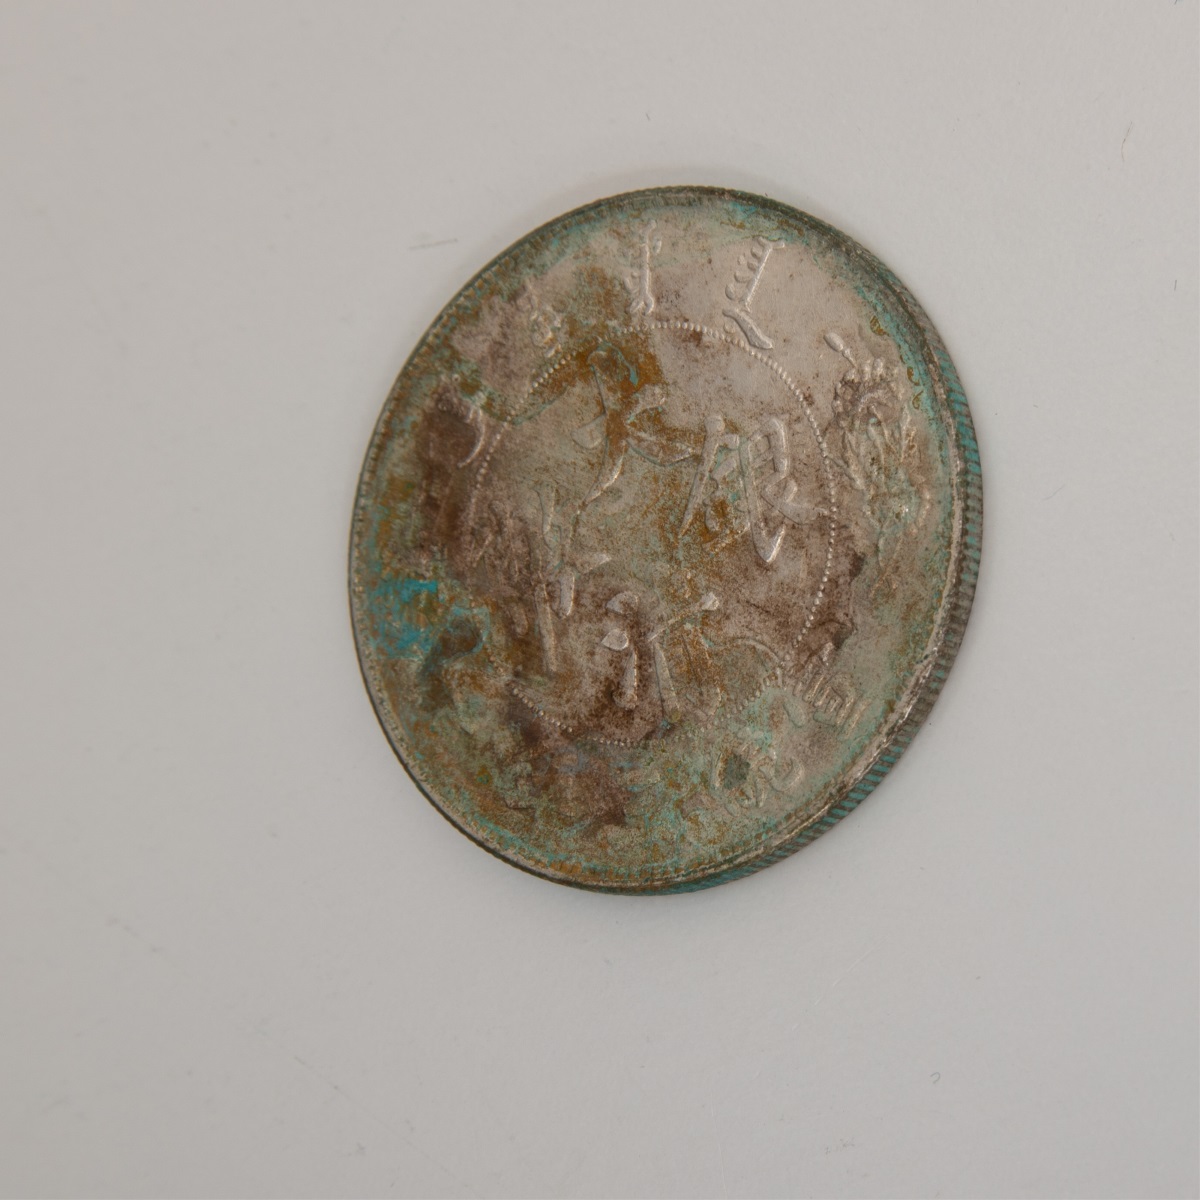 China XUAN TONG Year 3 (1911) 1 Dollar Coin - Image 3 of 6